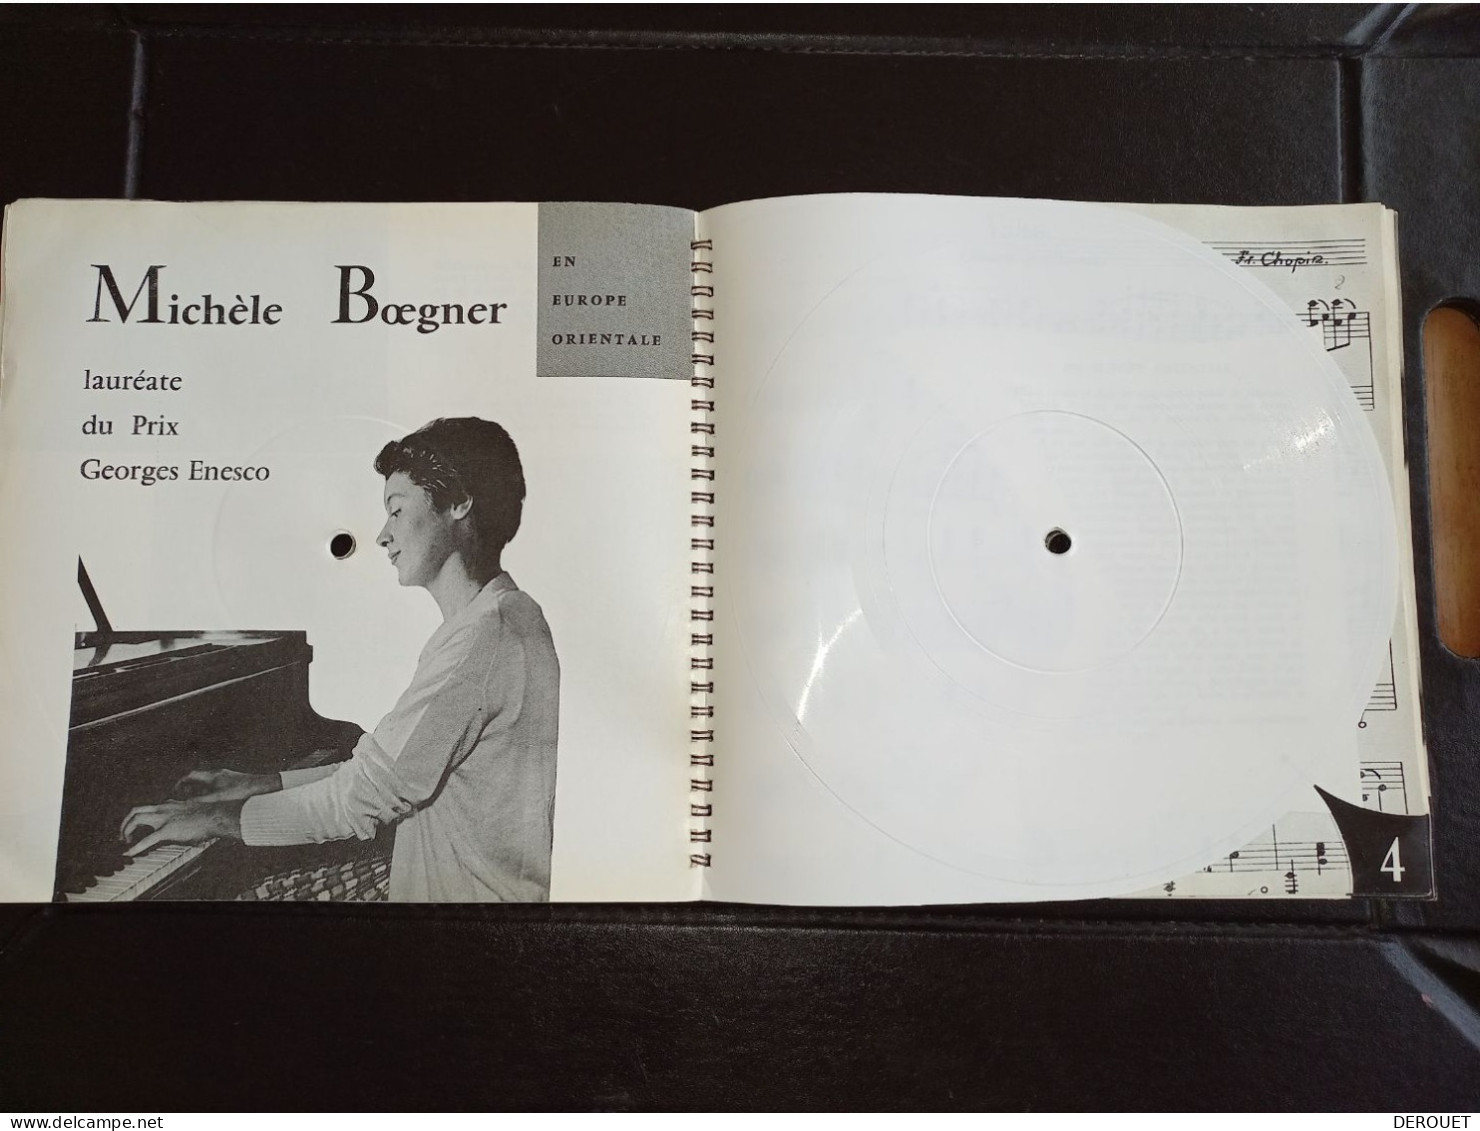 Sonorama N° 2 Novembre 1958 - Le Magazine Sonore De L'actualité - 6 Disques - Special Formats